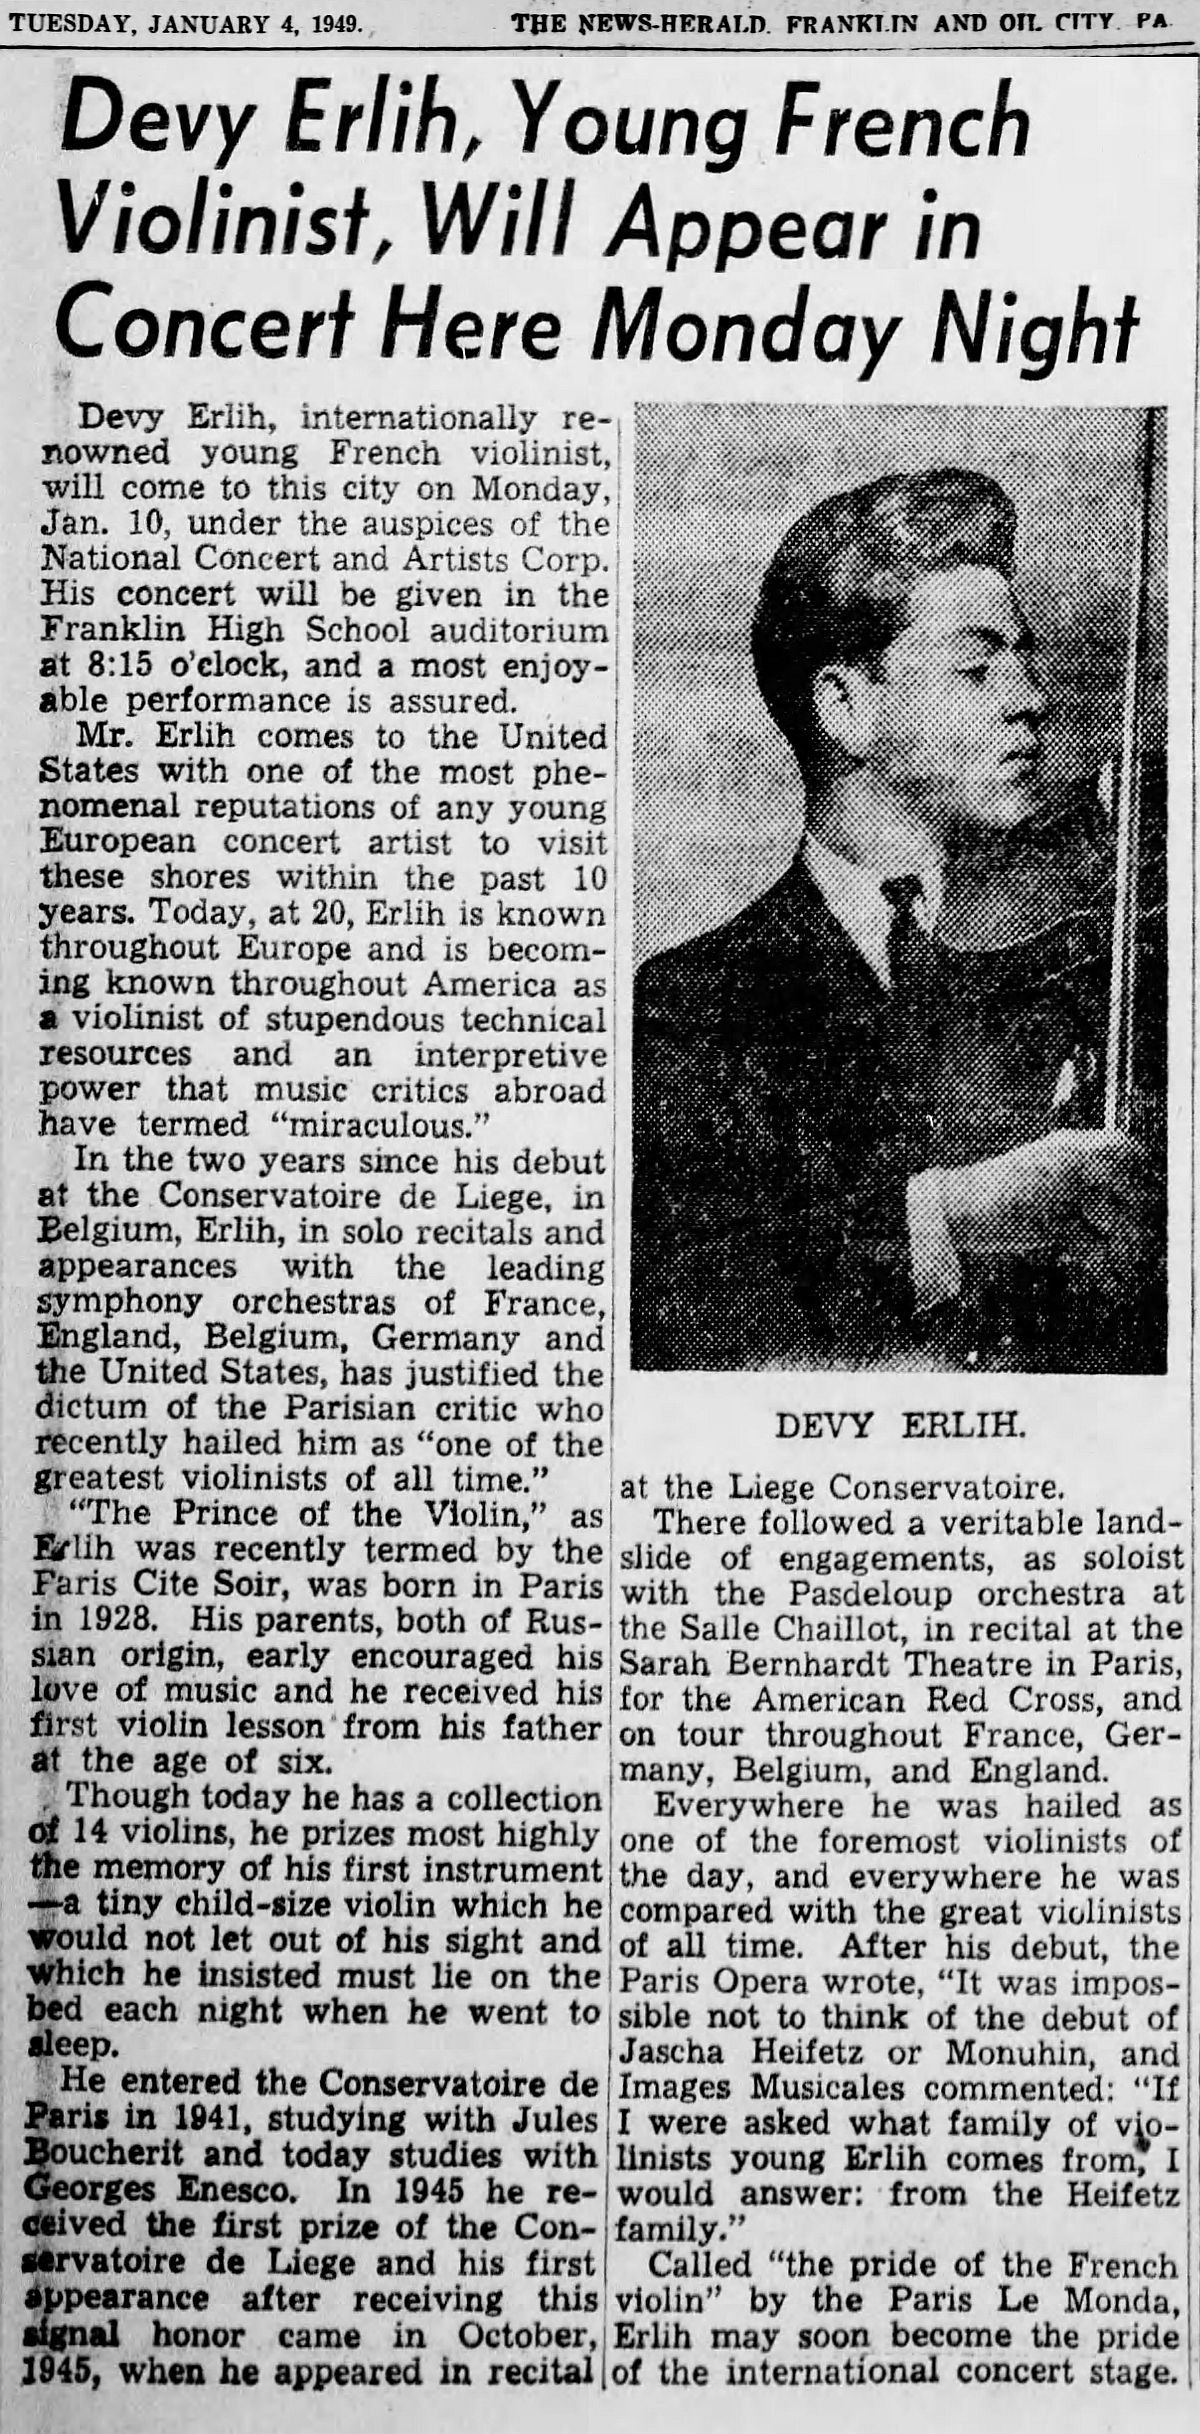 Extrait du The News Herald du 04 janvier 1949, page 11, clicquer pour une vue agrandie